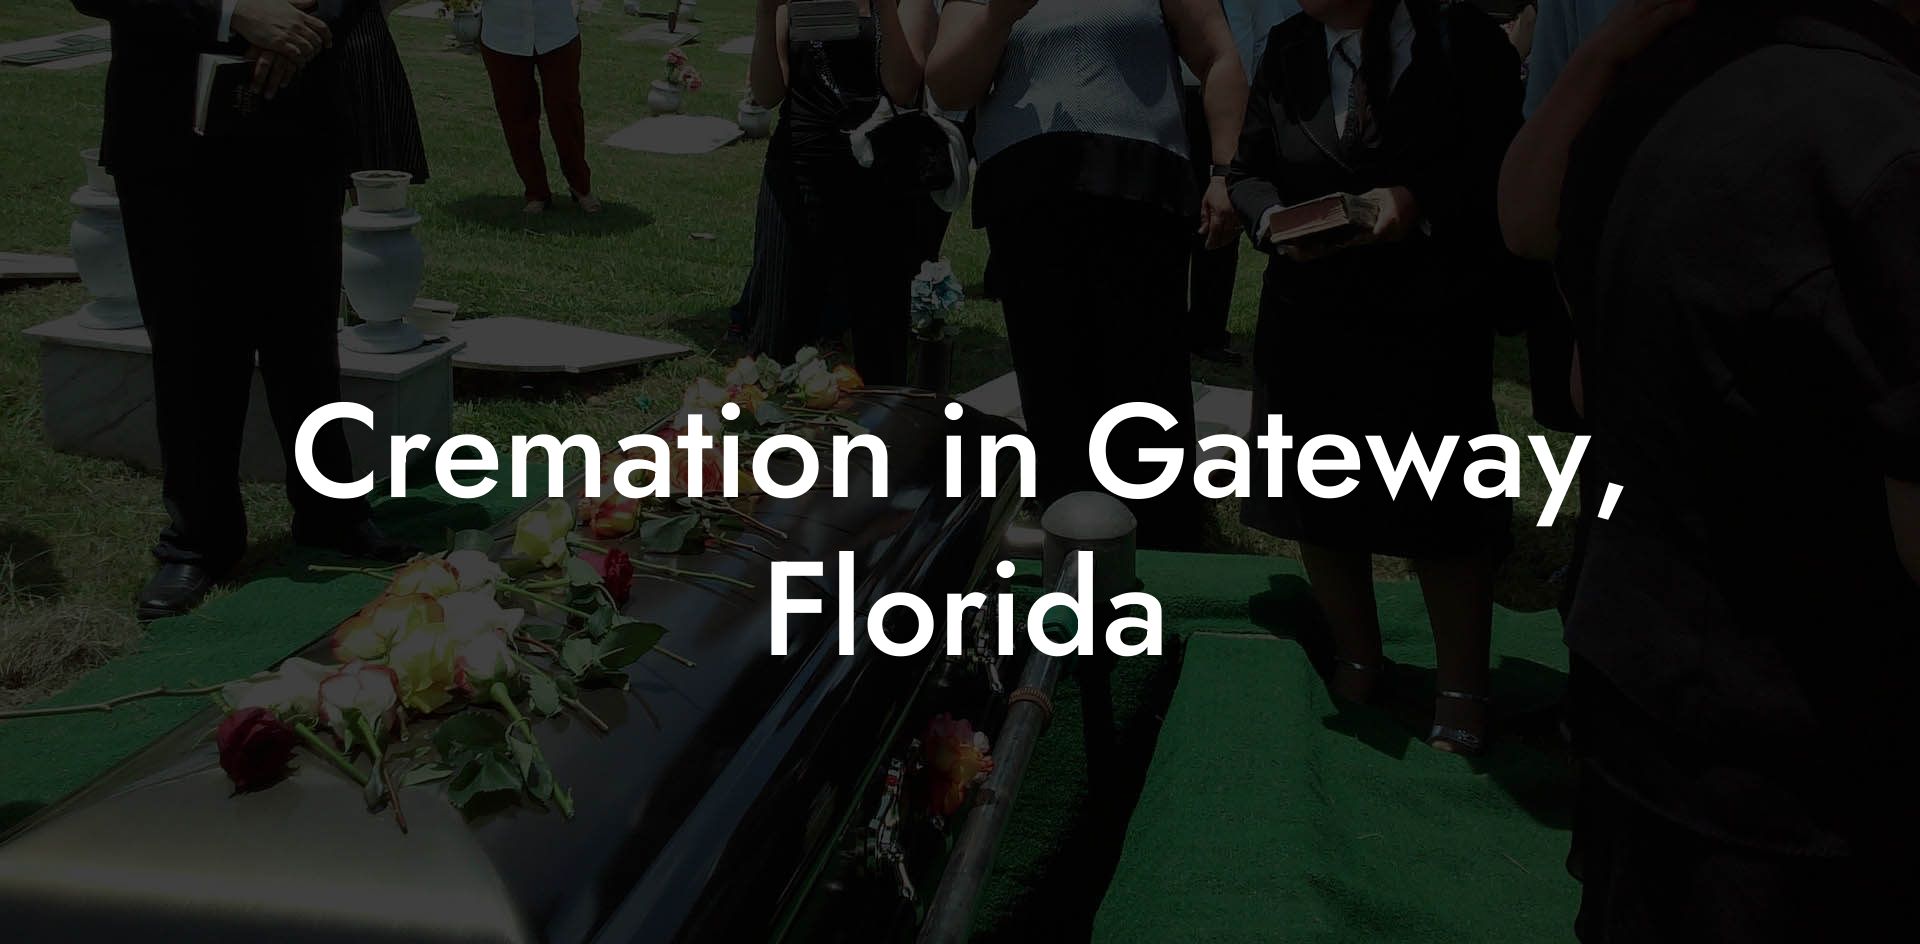 Cremation in Gateway, Florida